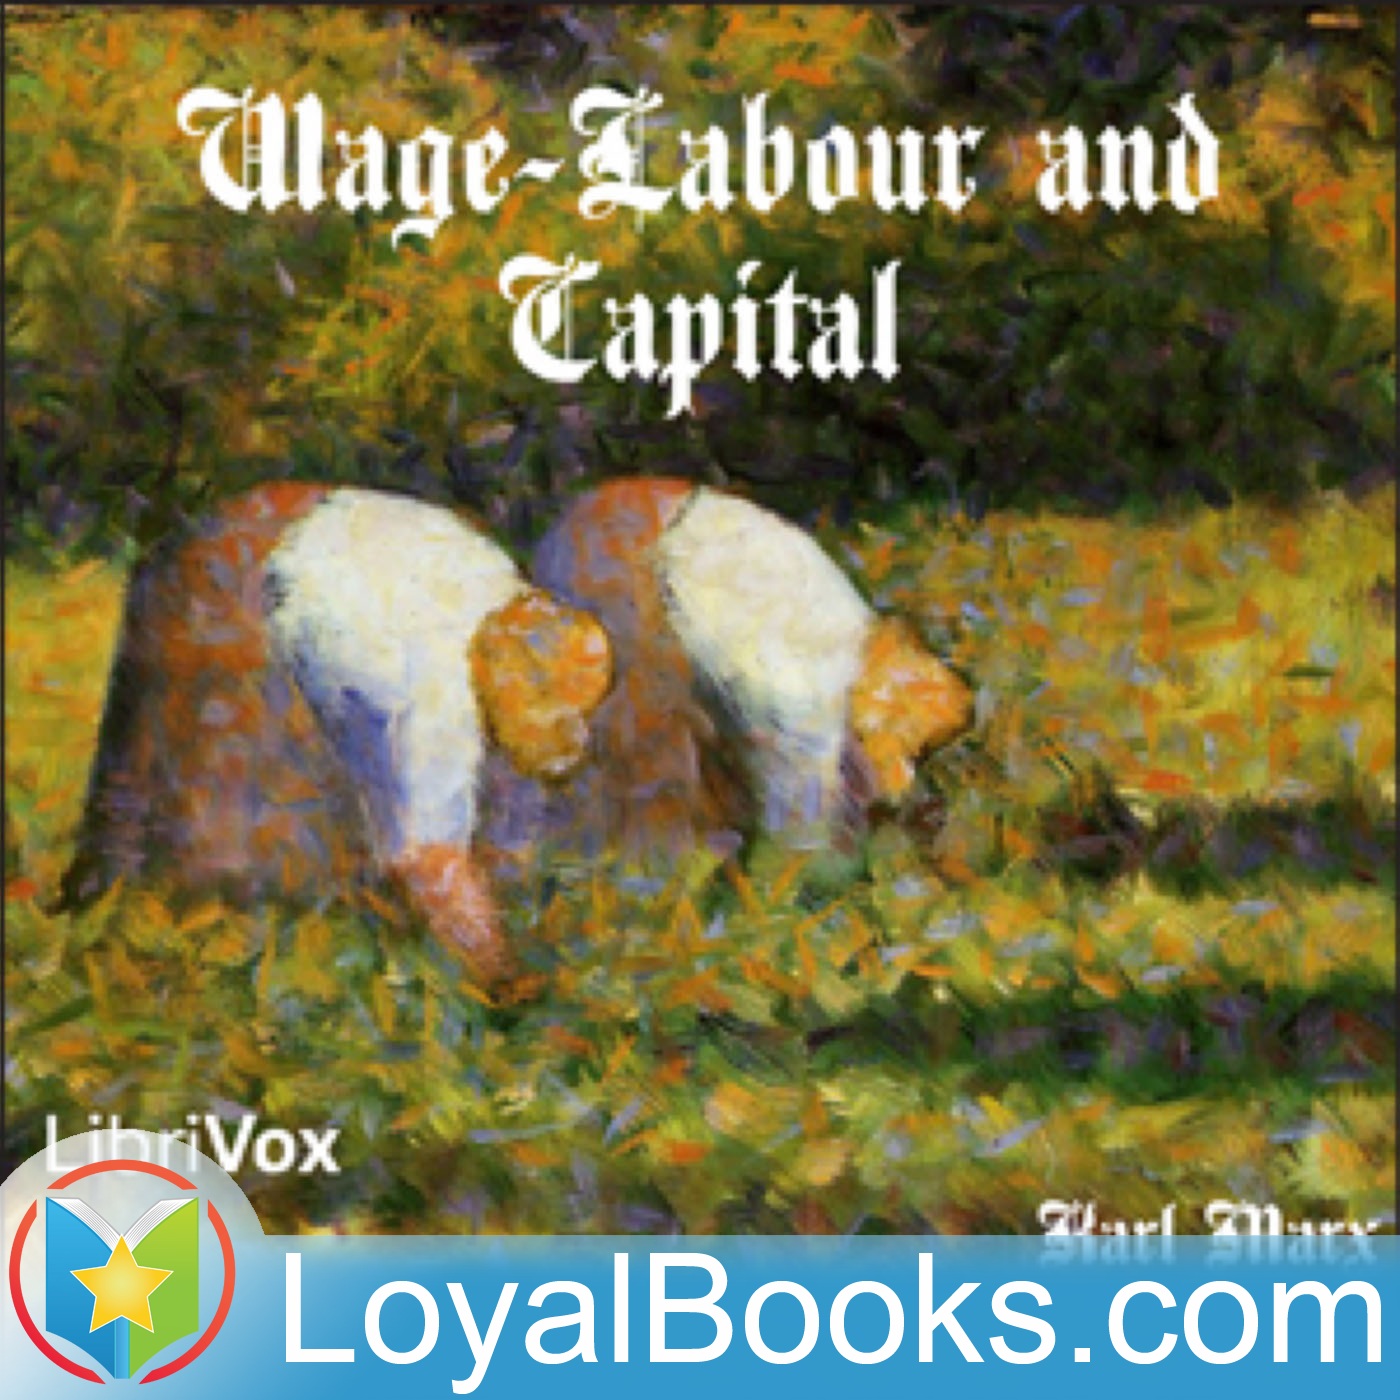 marx wage labor and capital